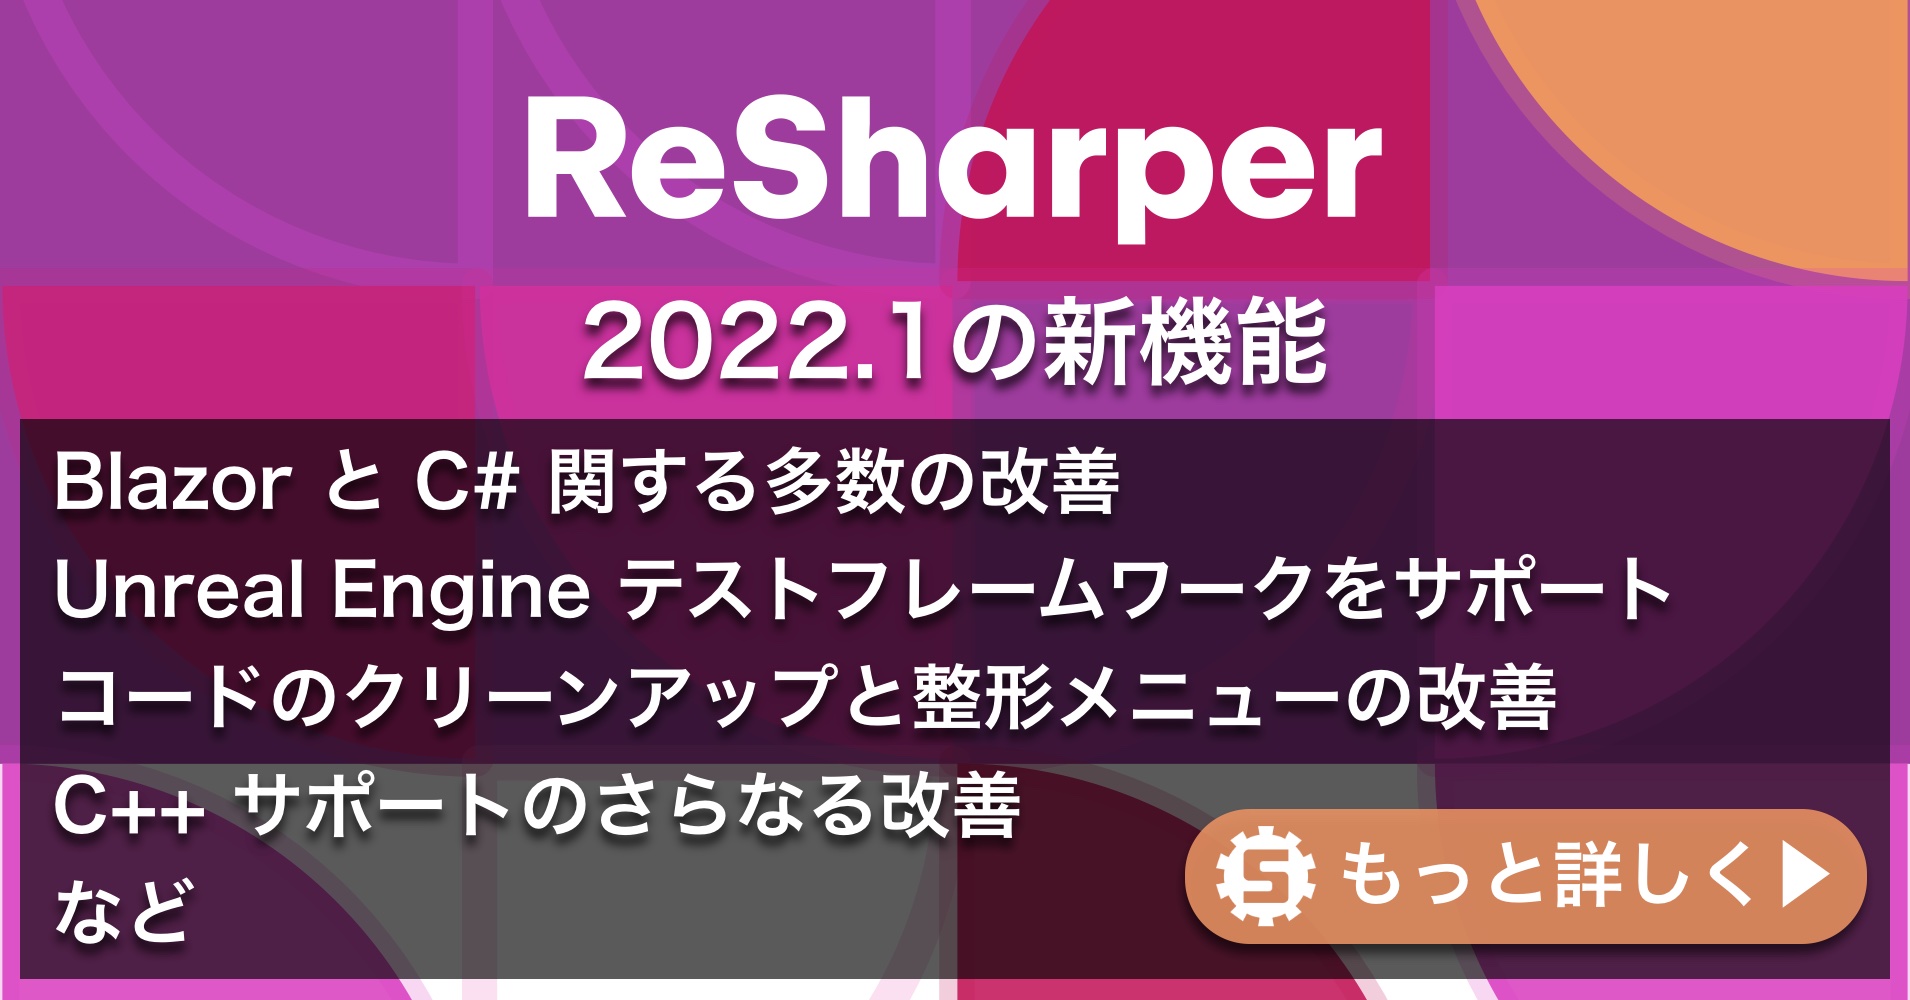 ReSharper 2022.1の新機能